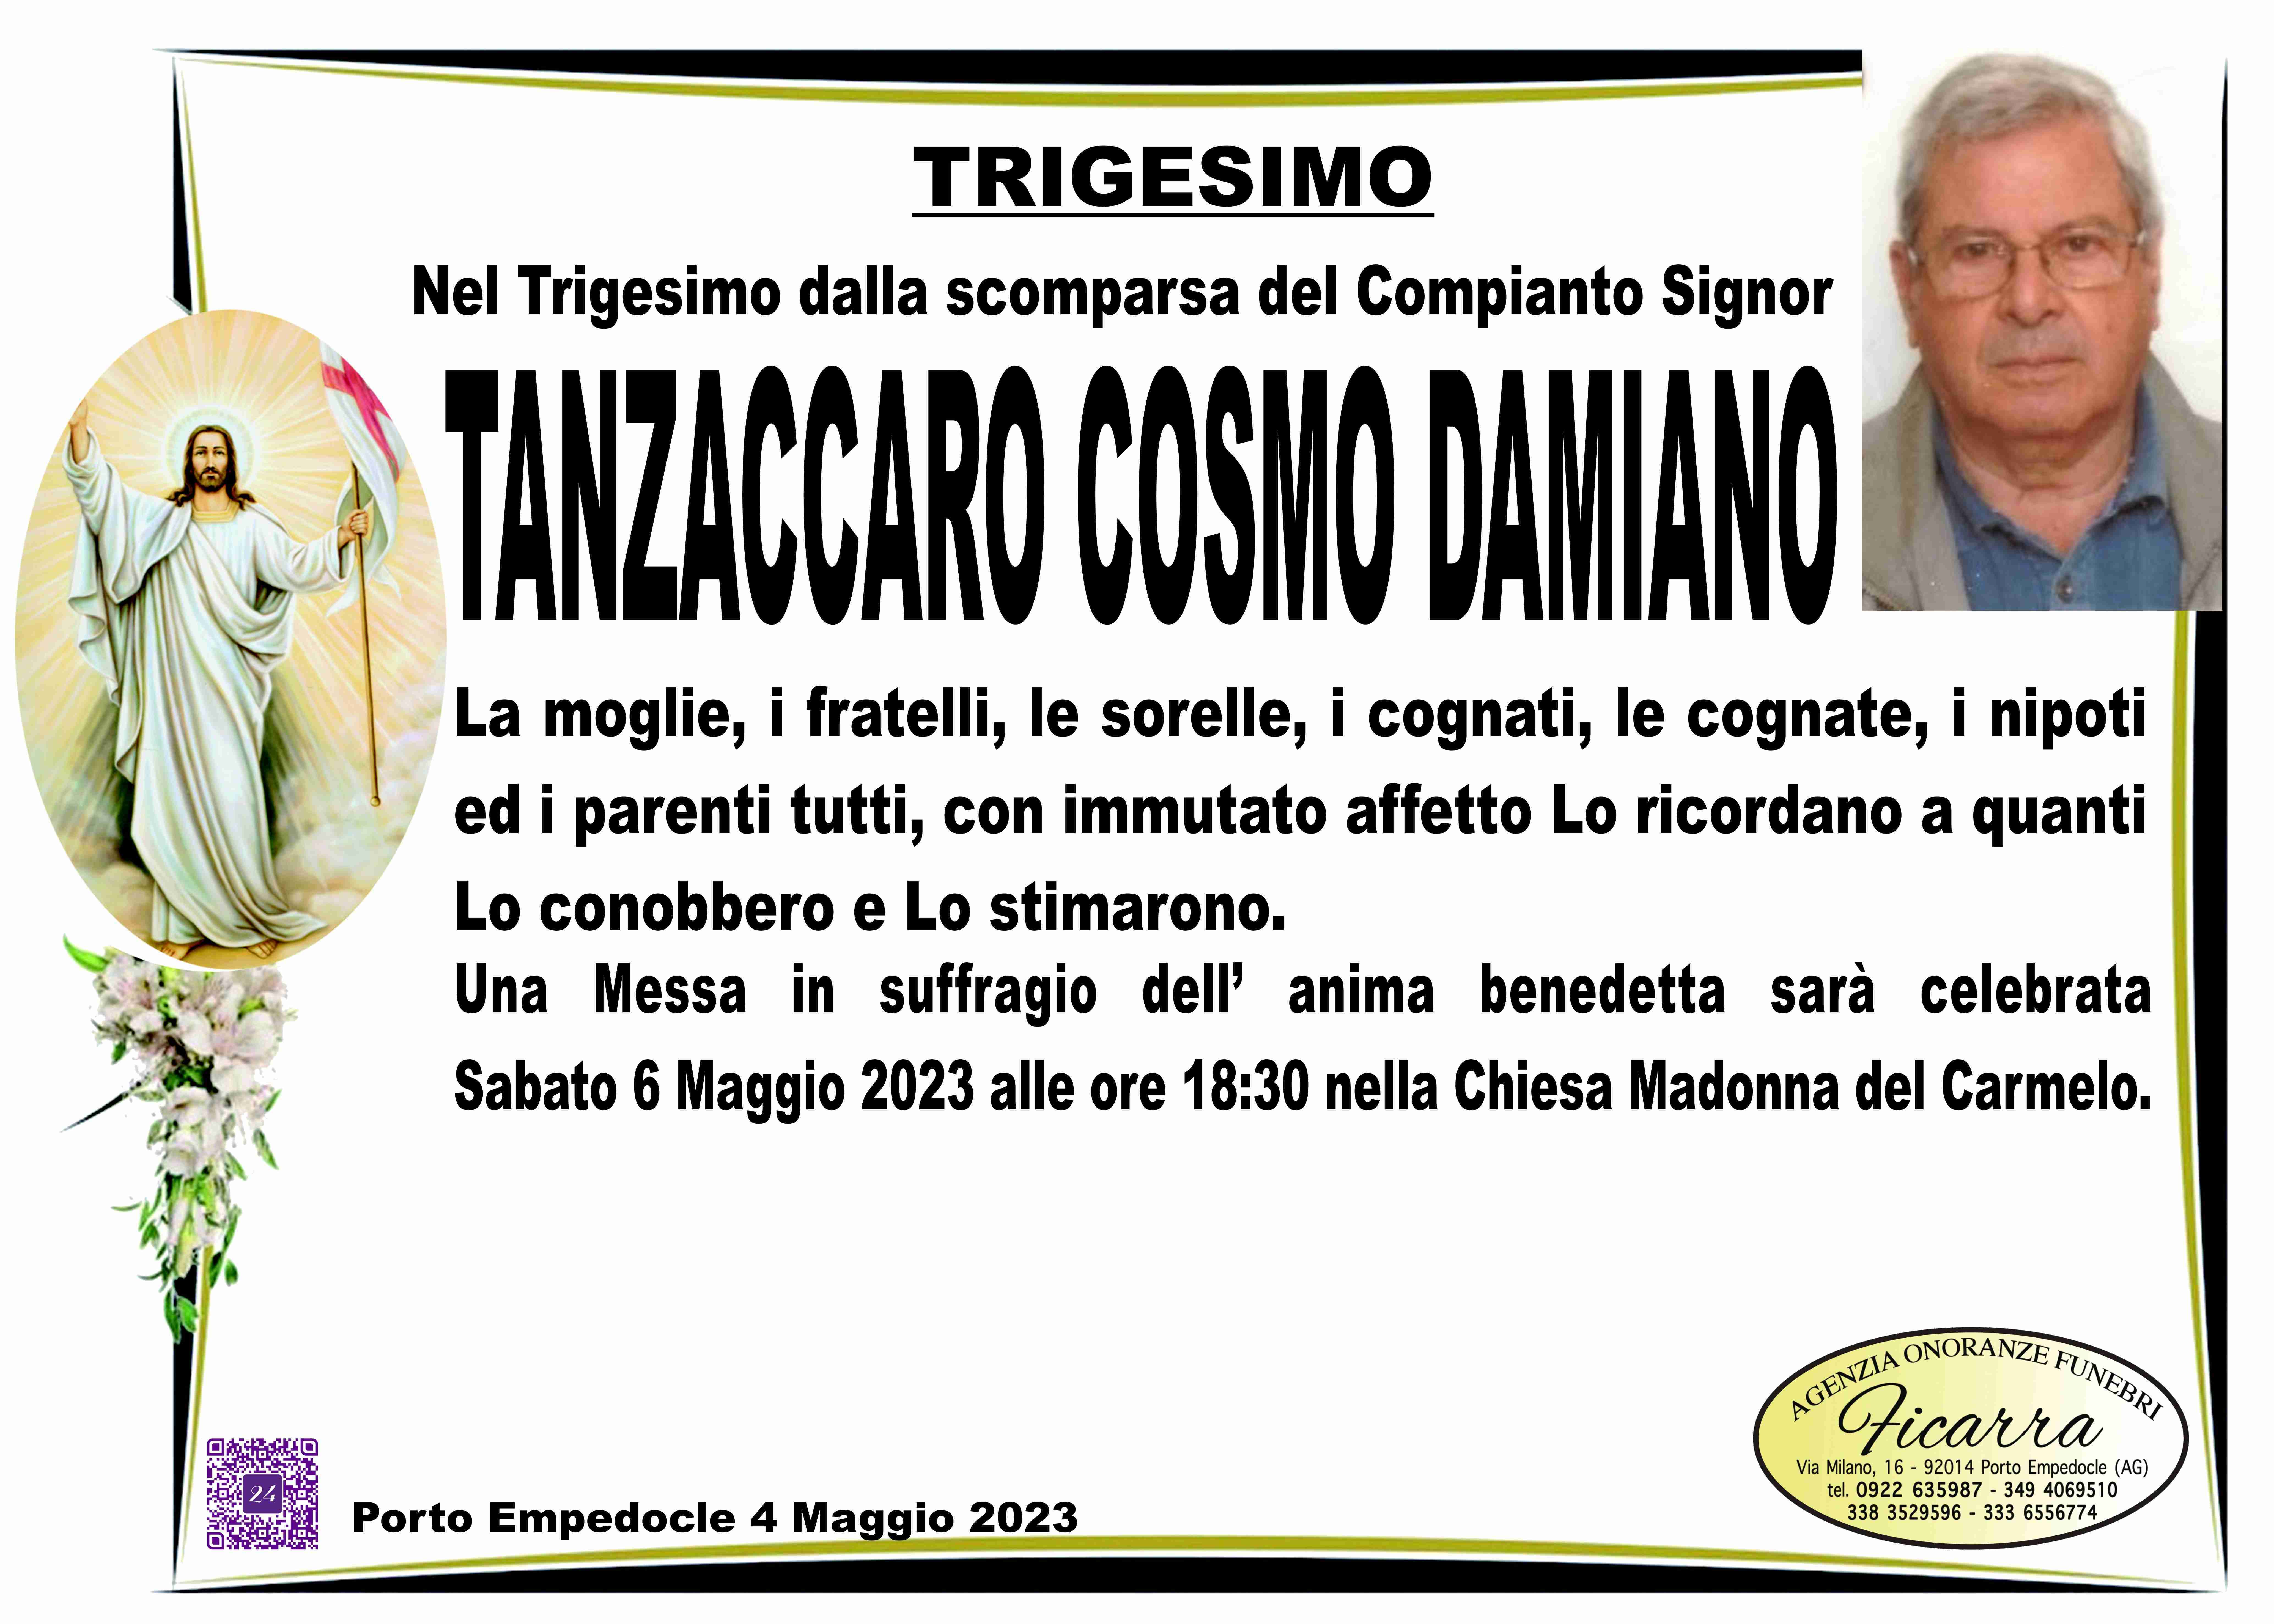 Cosmo Damiano Tanzaccaro